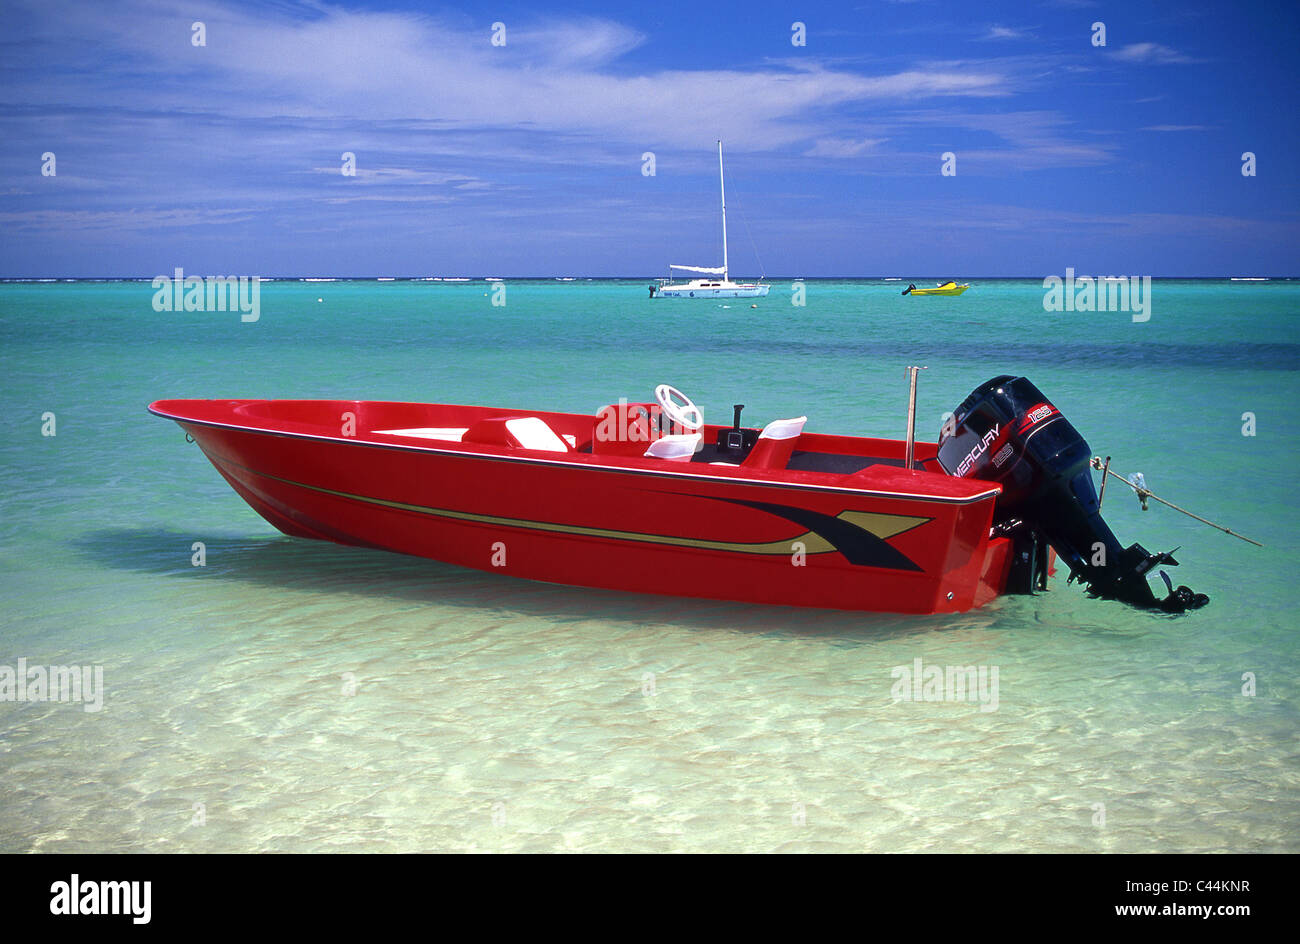 Hors-bord rouge vif sur la plage à l'Ile Maurice, de l'Océan Indien Banque D'Images